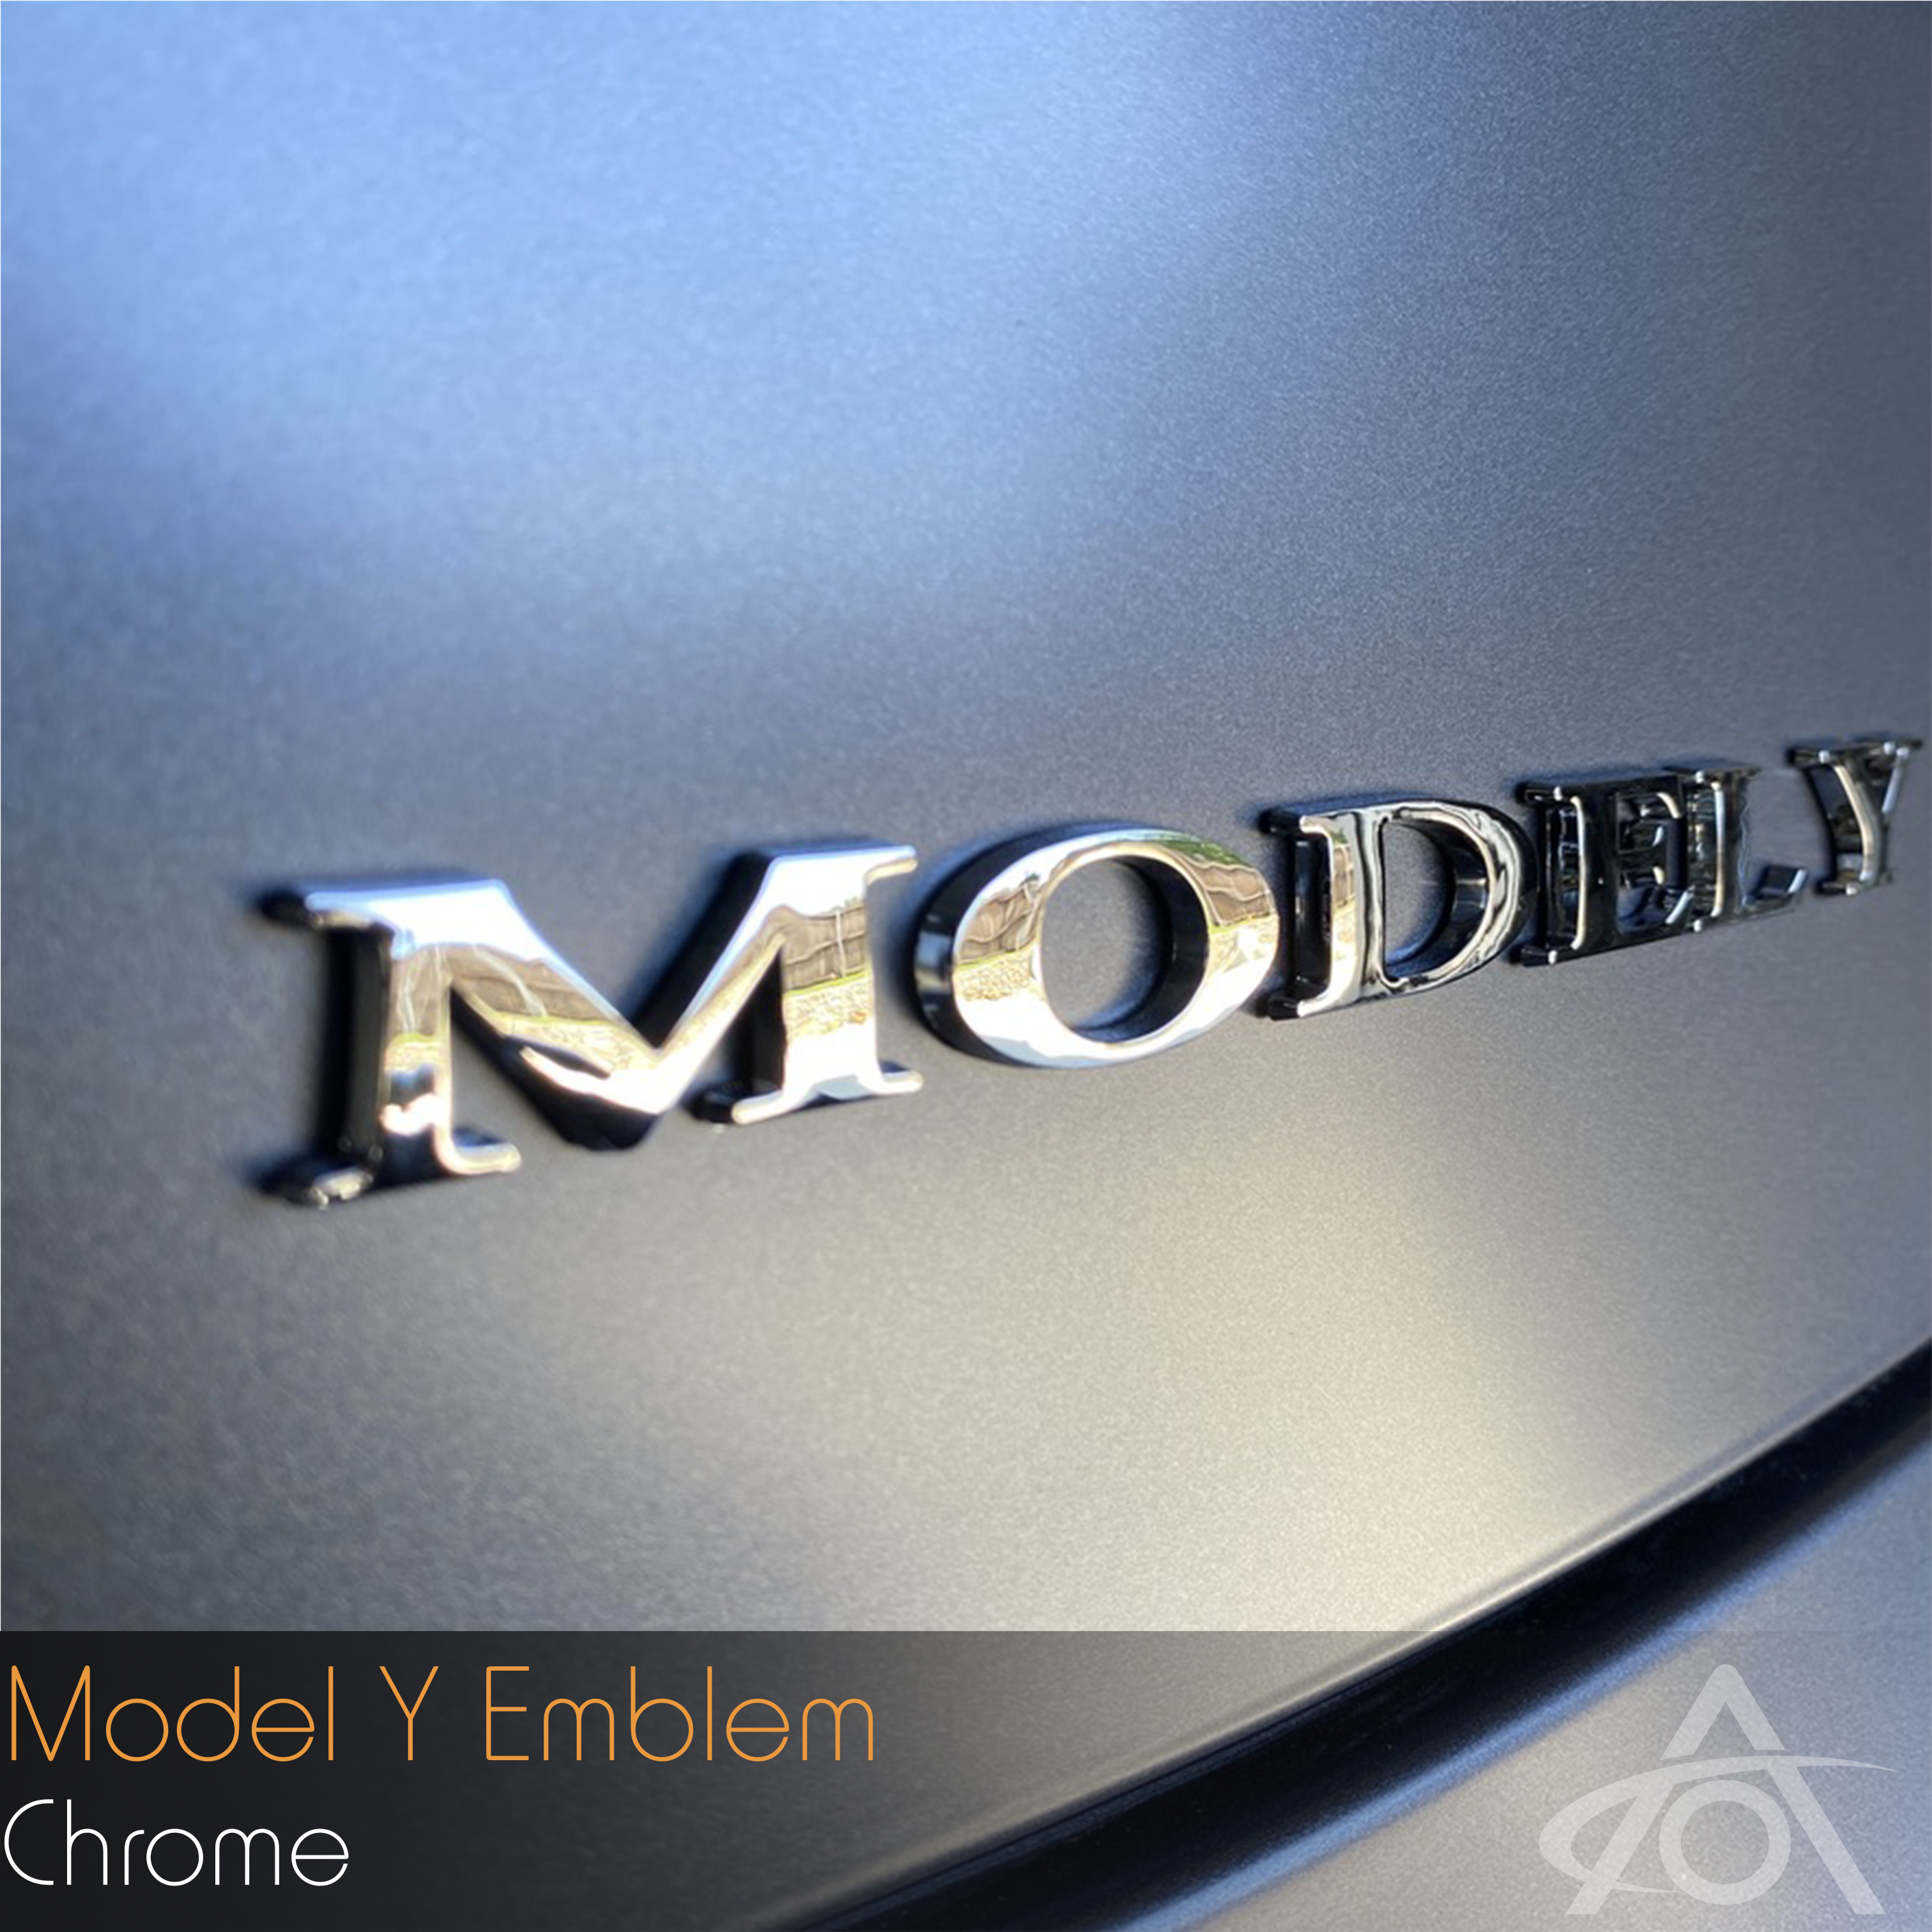 Model Y Emblem